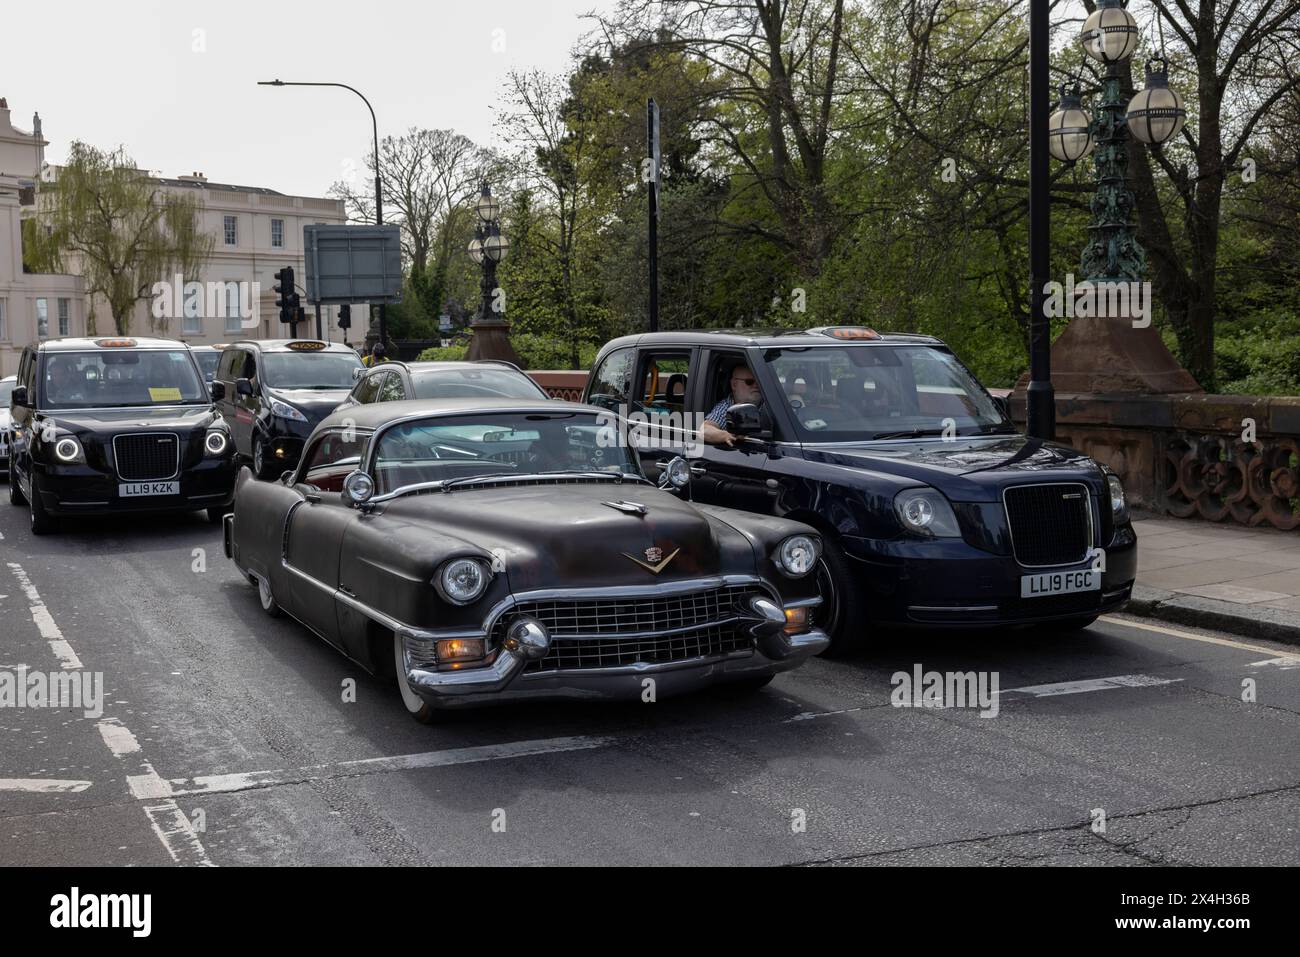 Cadillac de Ville, im Verkehr neben einem Londoner Taxi gehalten, Regents Park, Central London, England, Großbritannien Stockfoto